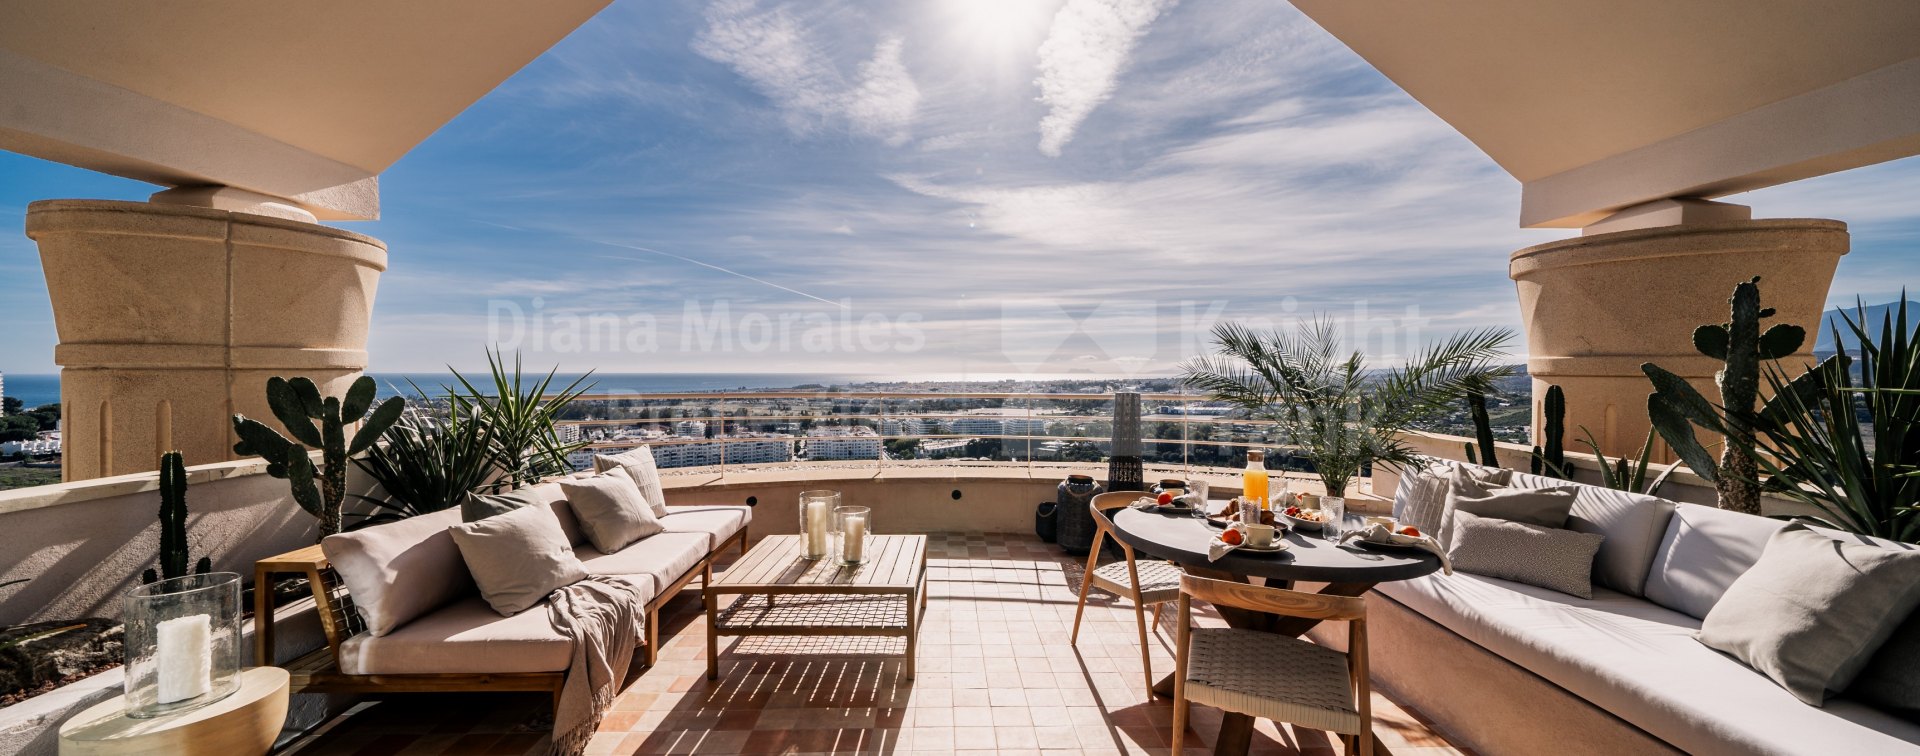 Magna Marbella, Duplex penthouse au design scandinave avec vue panoramique dans la vallée du golf